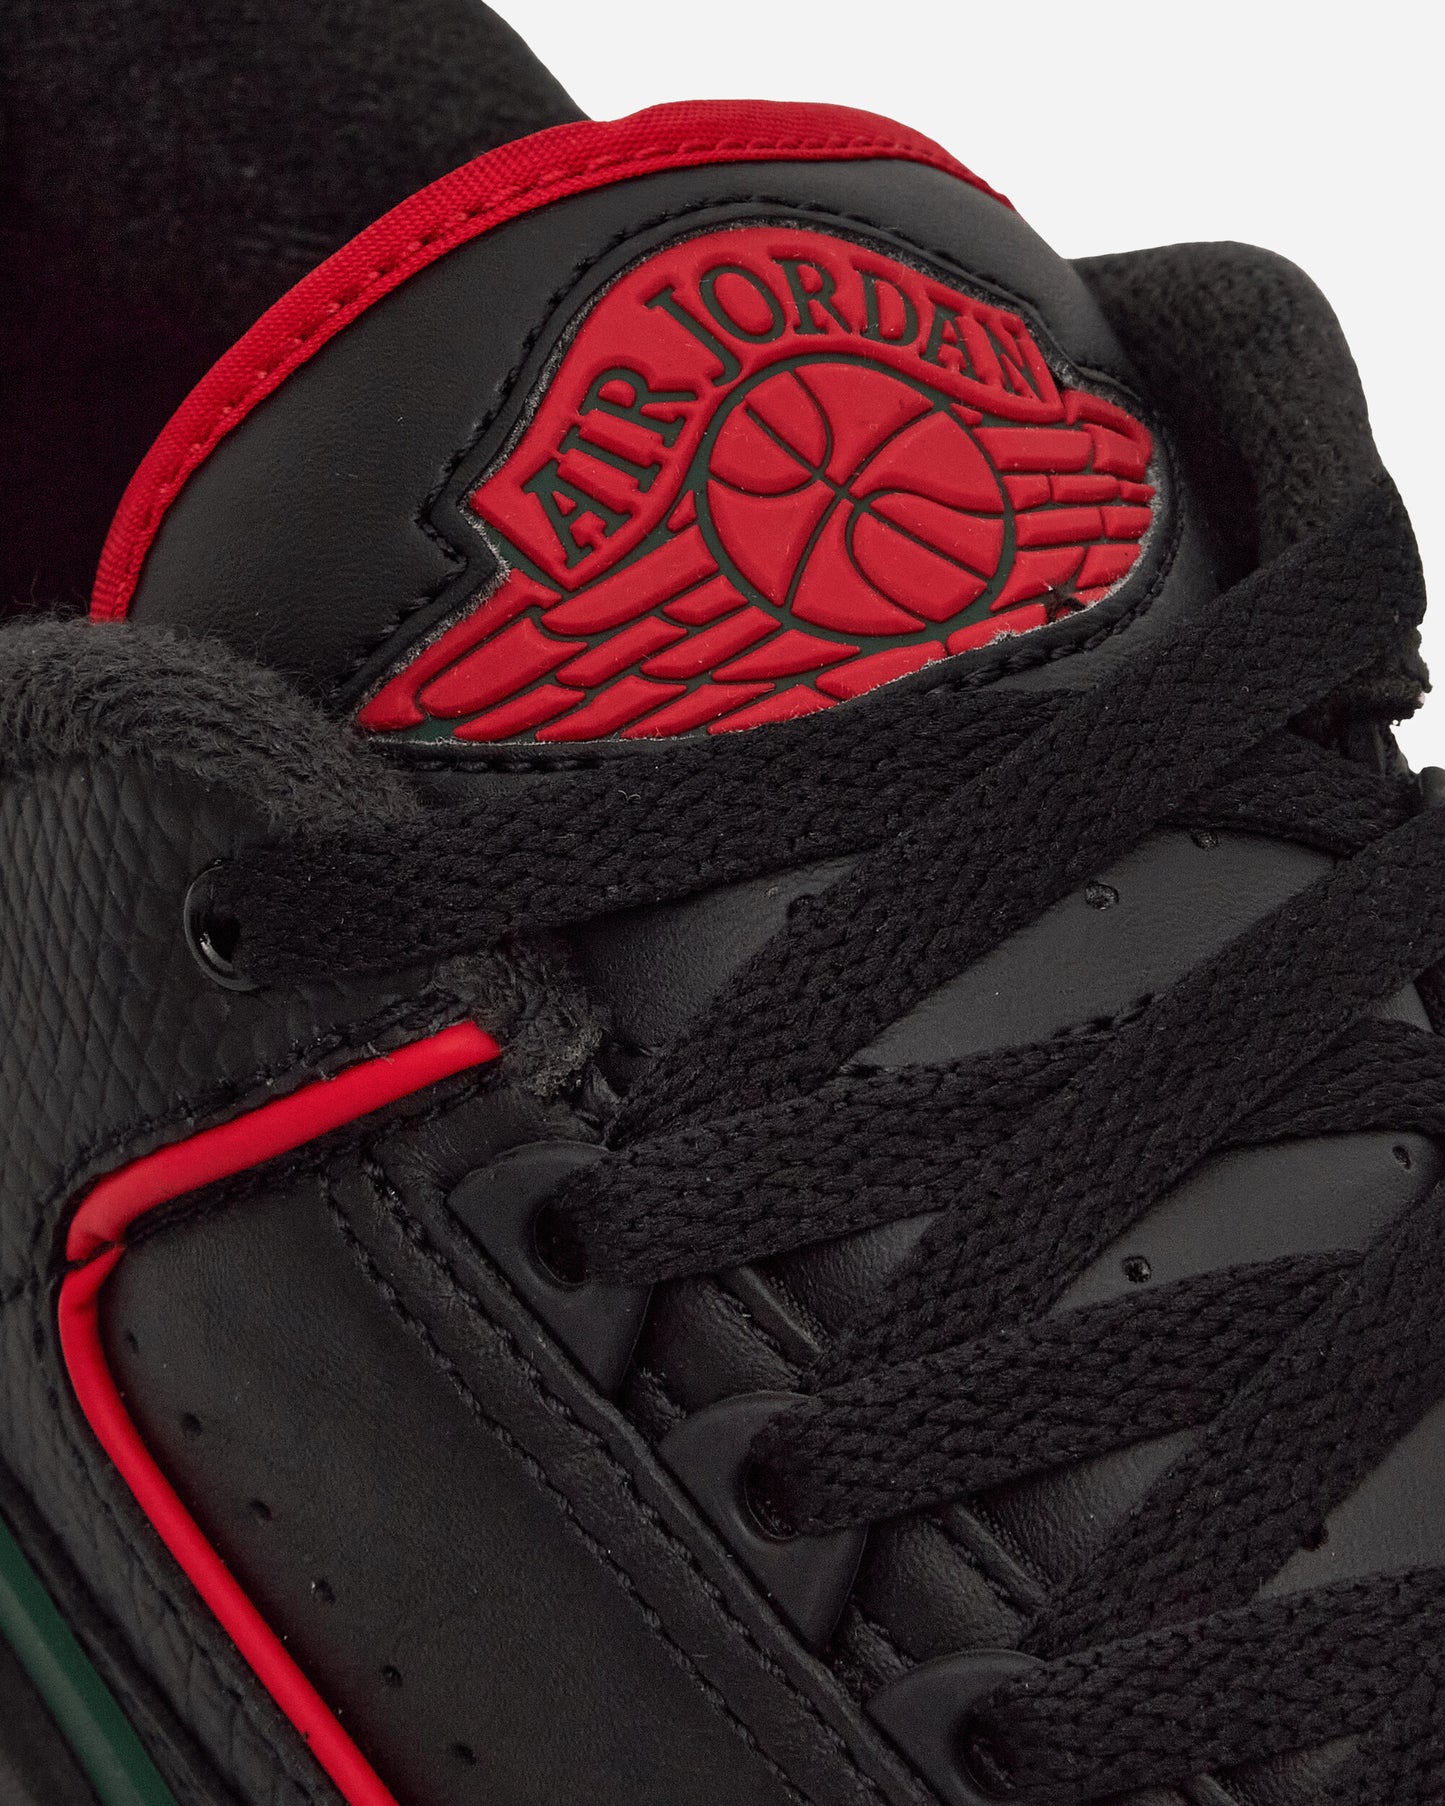 Nike Jordan Air Jordan 2 Retro Low Black/Fire Red/Fir Sneakers Low DV9956-006